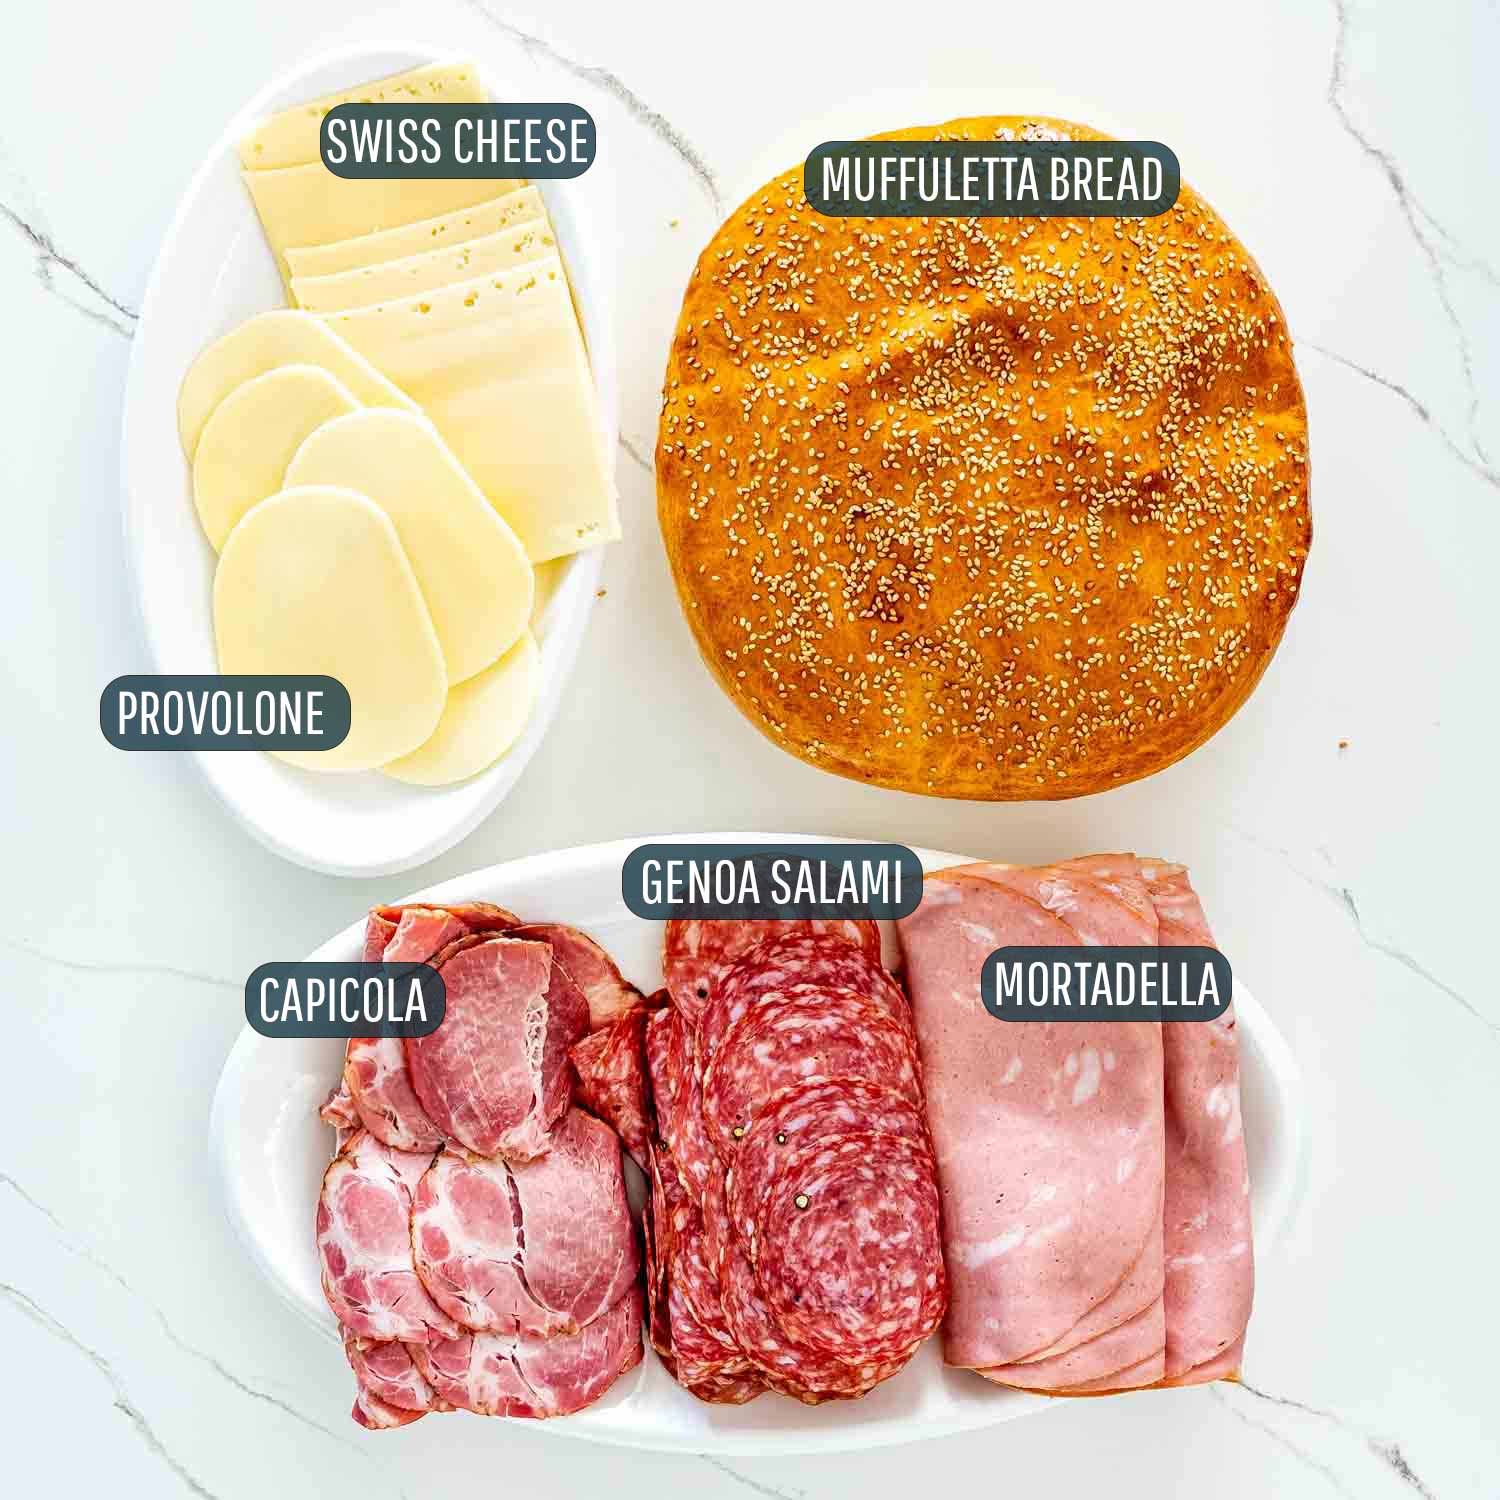 ingredients needed to make muffuletta sandwich.